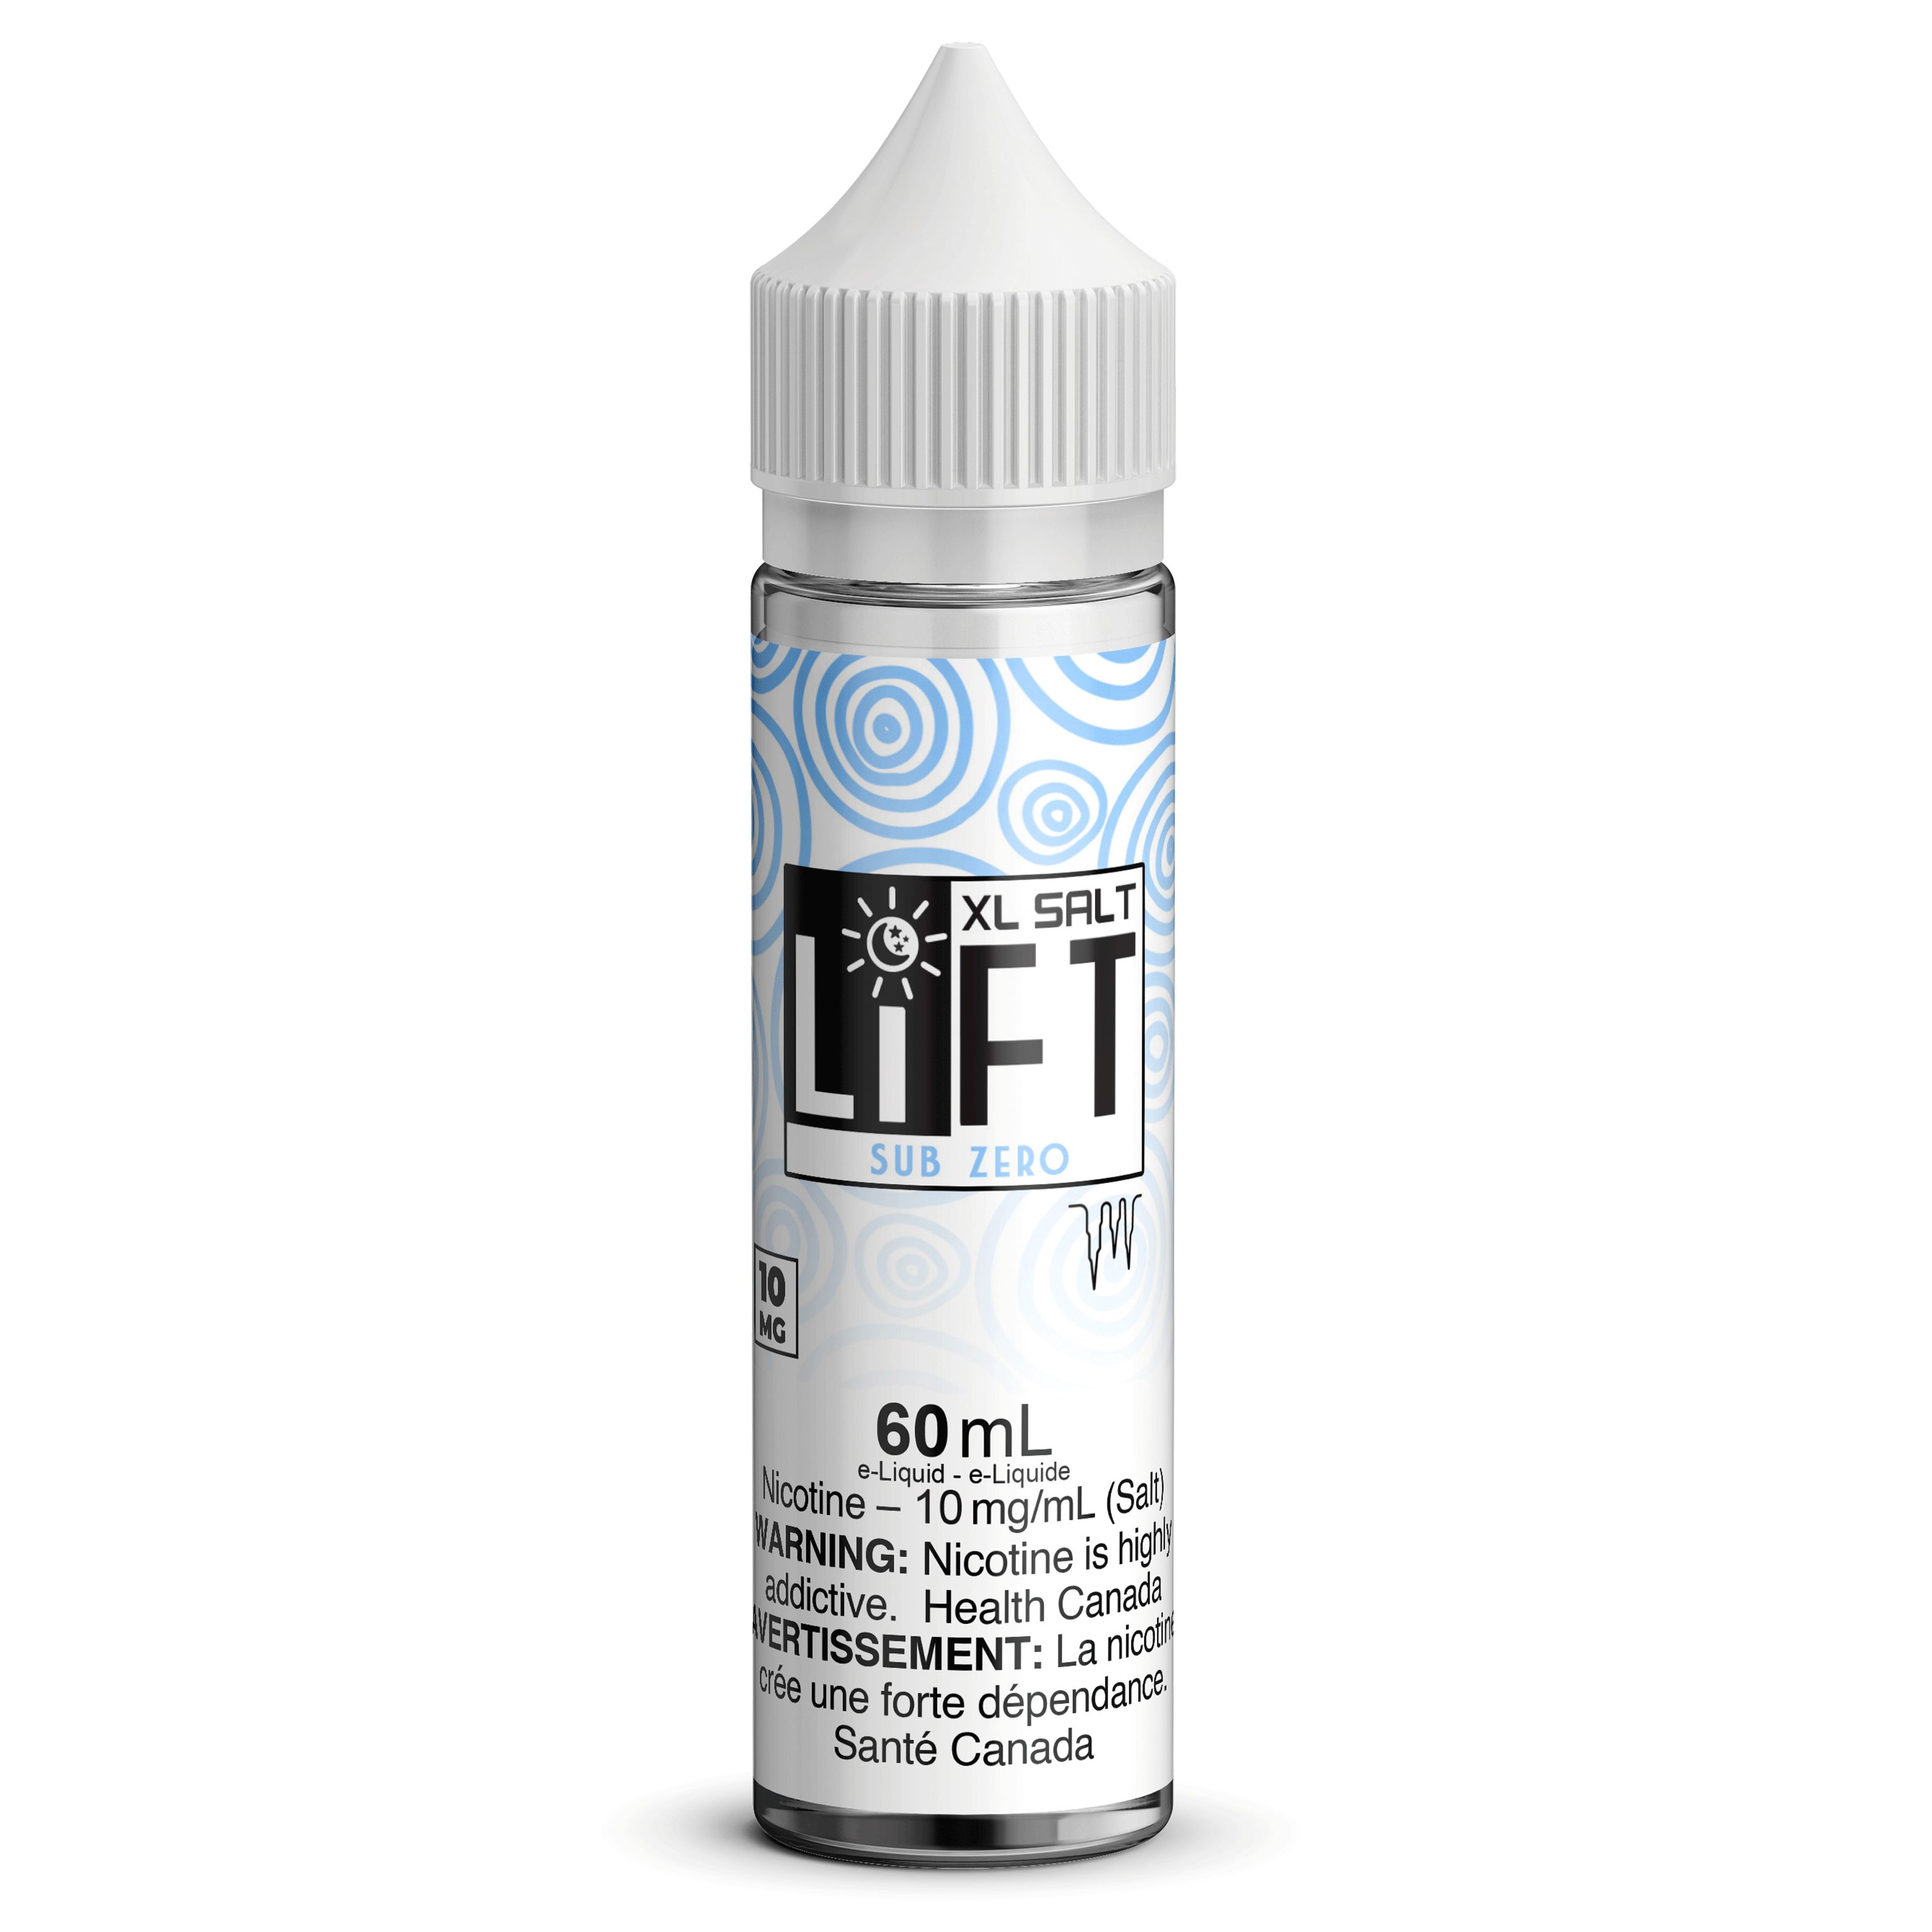 LIFT XL SALT - Sub Zero available on Canada online vape shop